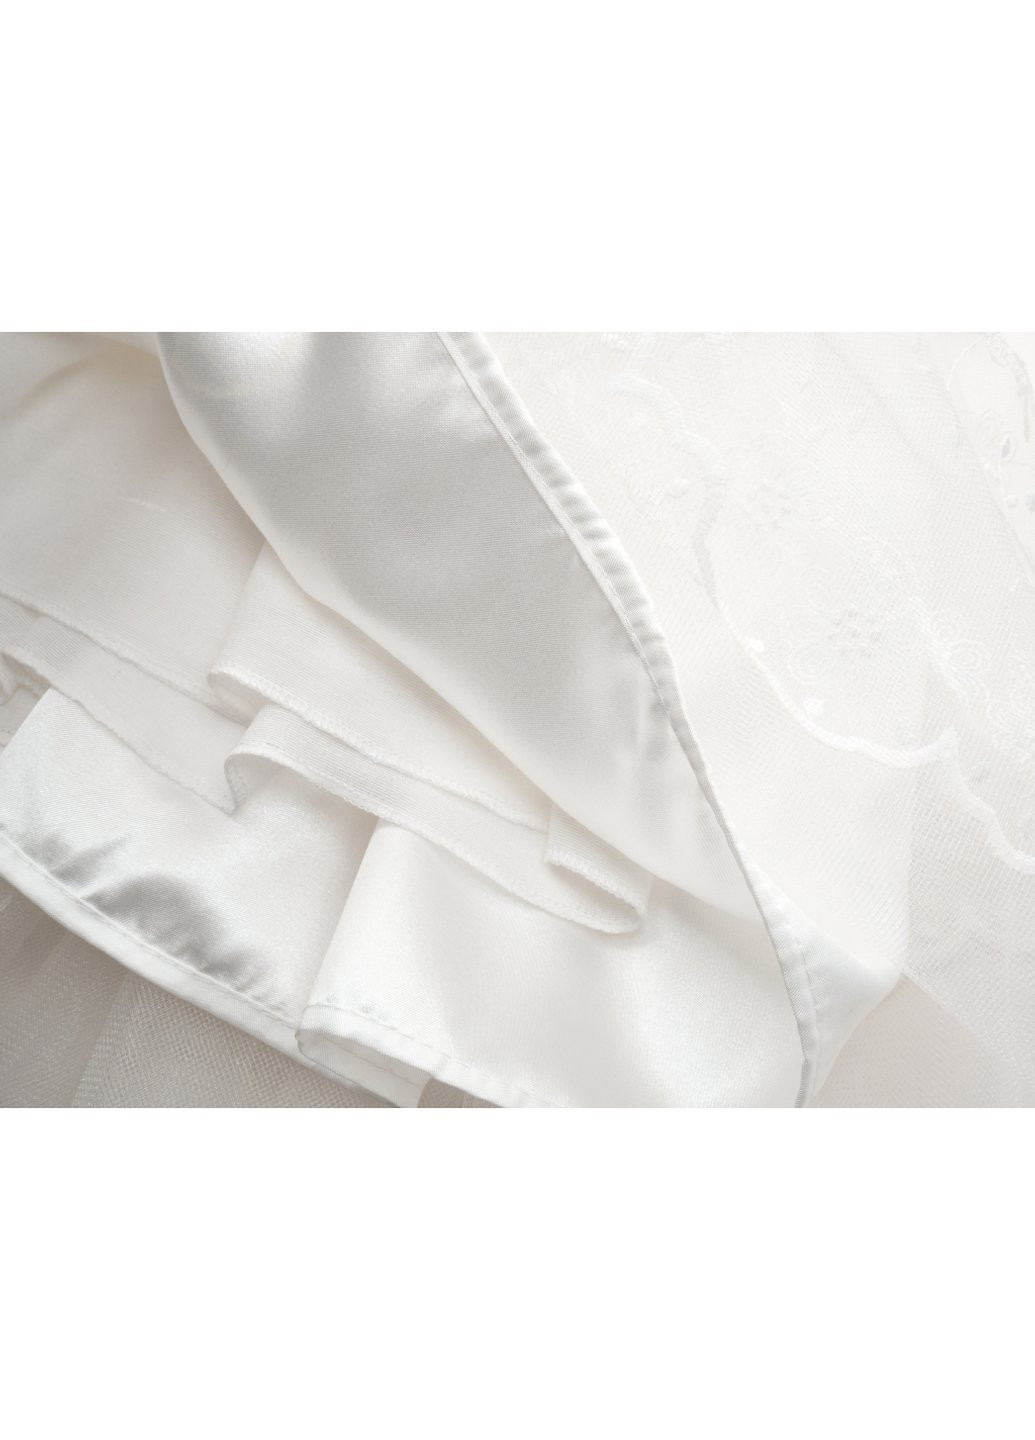 Комбинированное платье tivido праздничное с украшением (2135-110g-cream) Power (257205536)